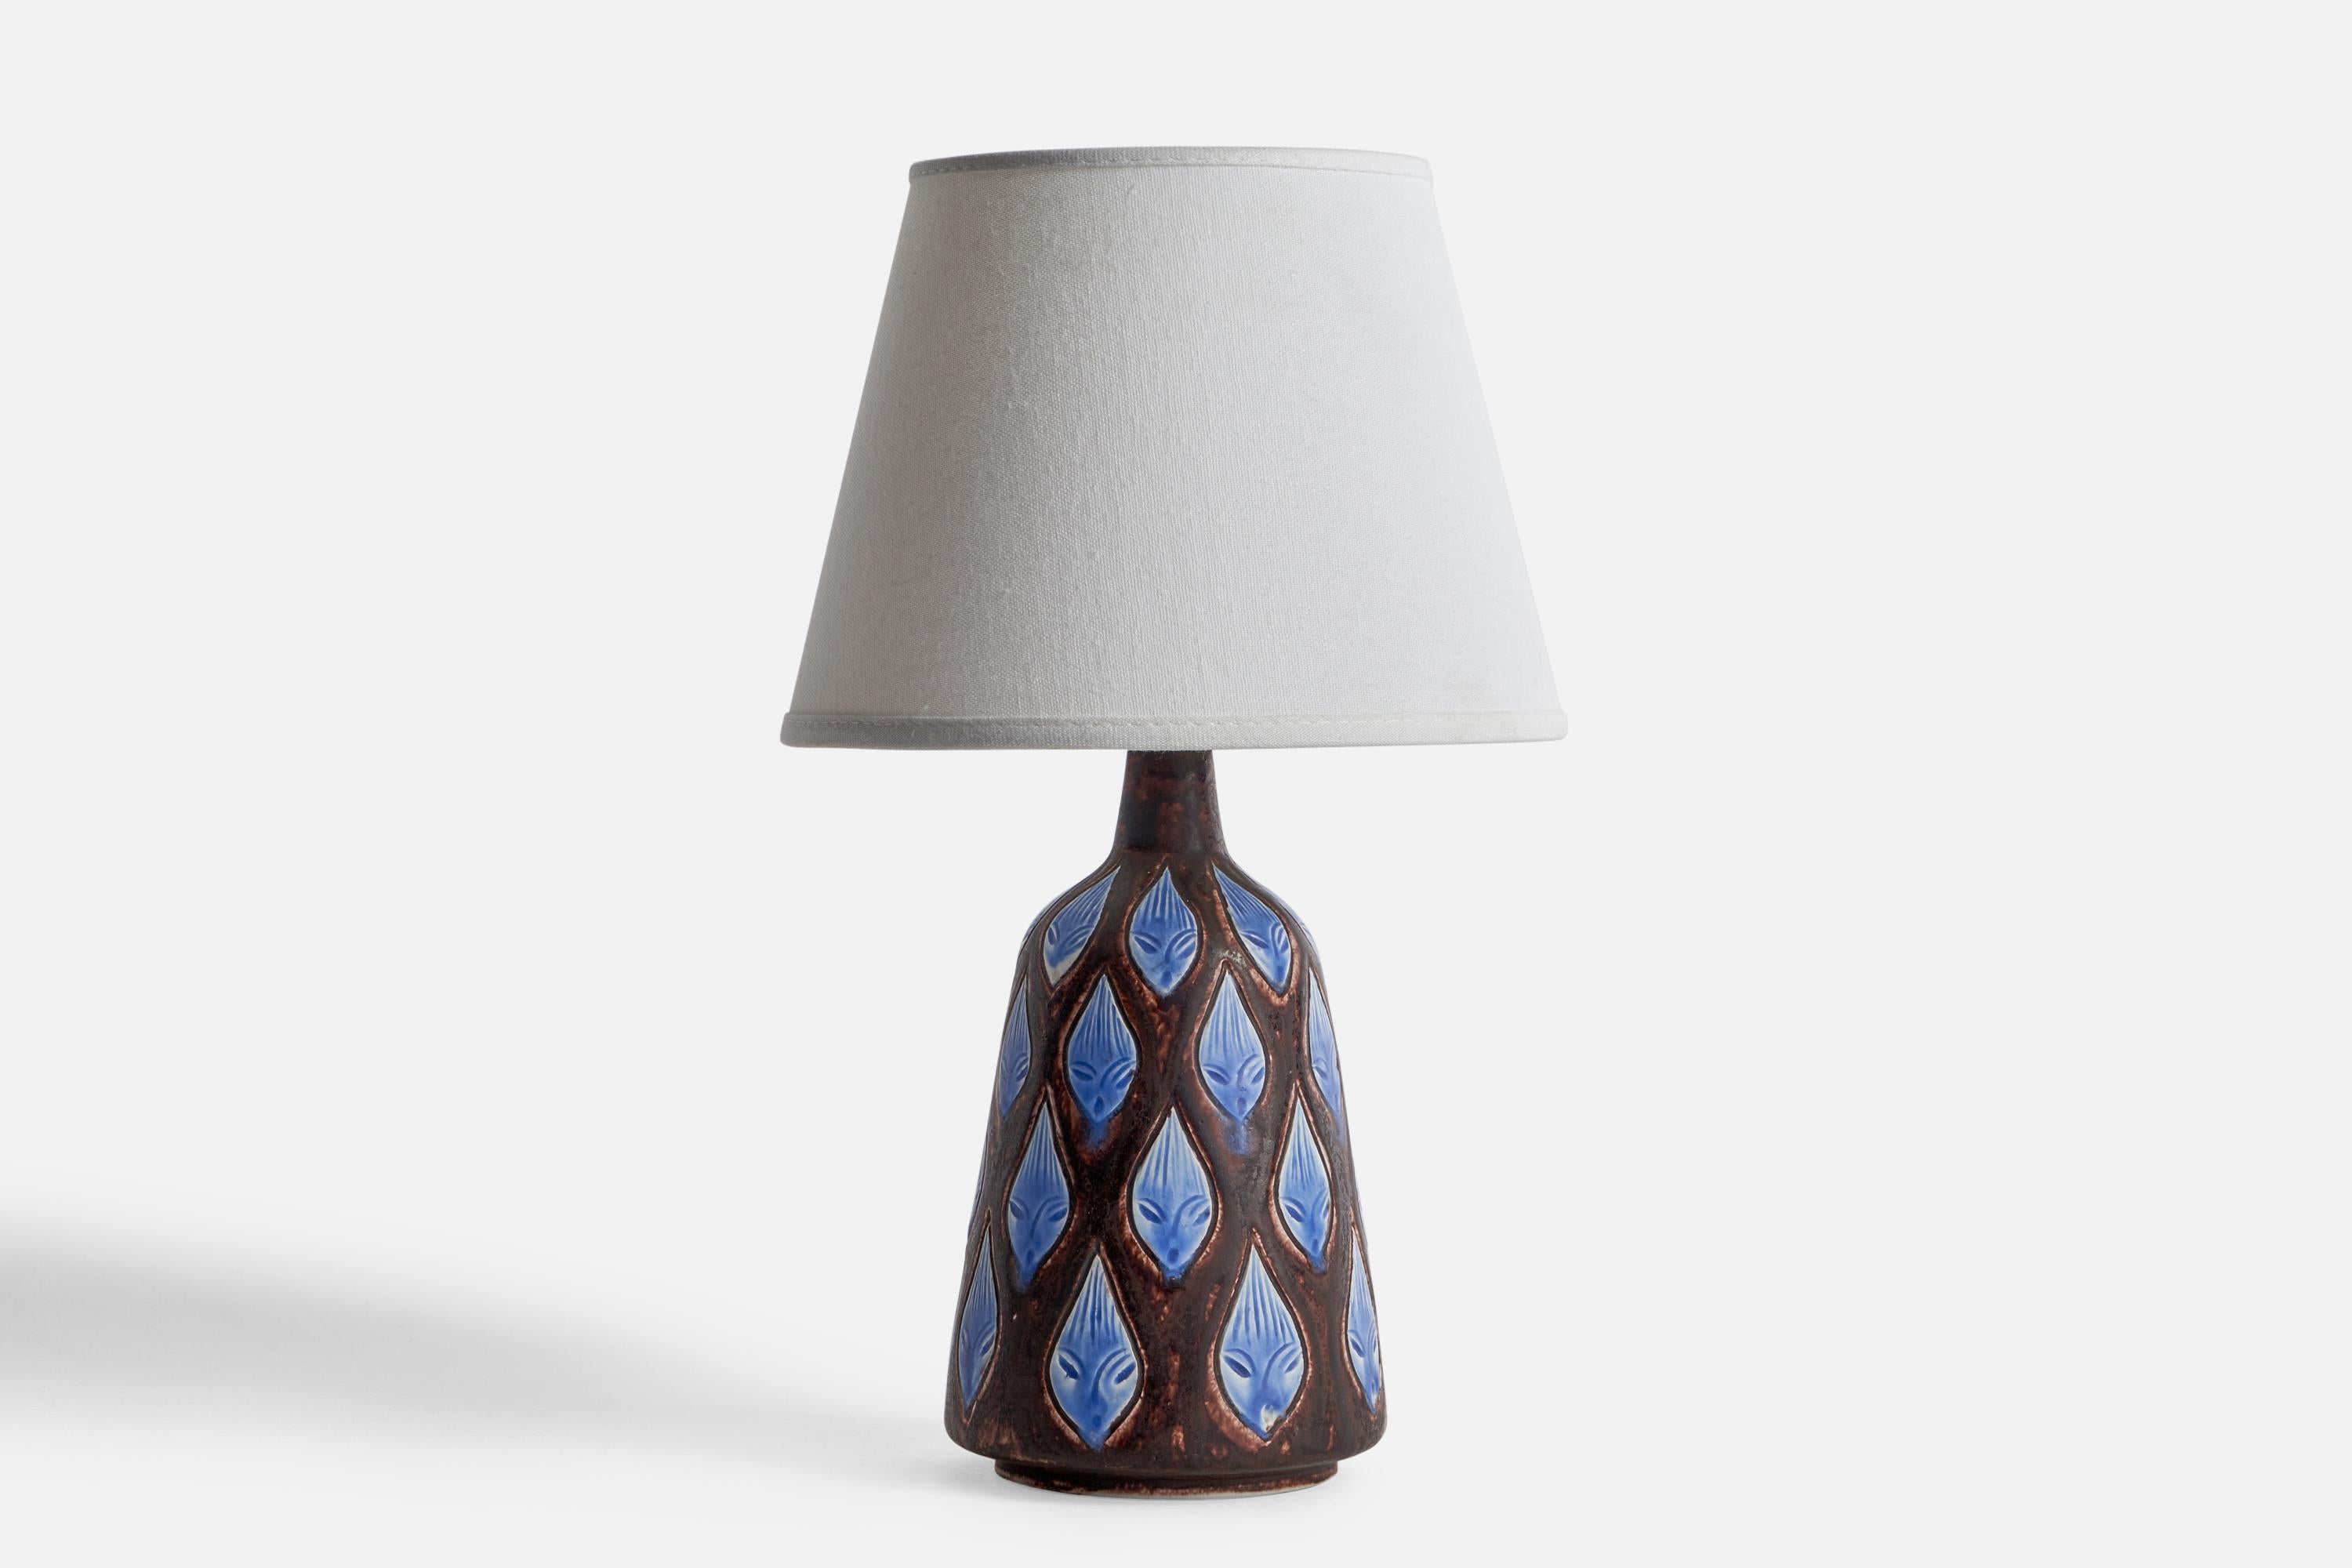 Lampe de table à glaçure brune et bleue et à incisions, conçue par Hertha Bengtson et produite par Rörstrand, Suède, années 1960.

Dimensions de la lampe (pouces) : 10.5